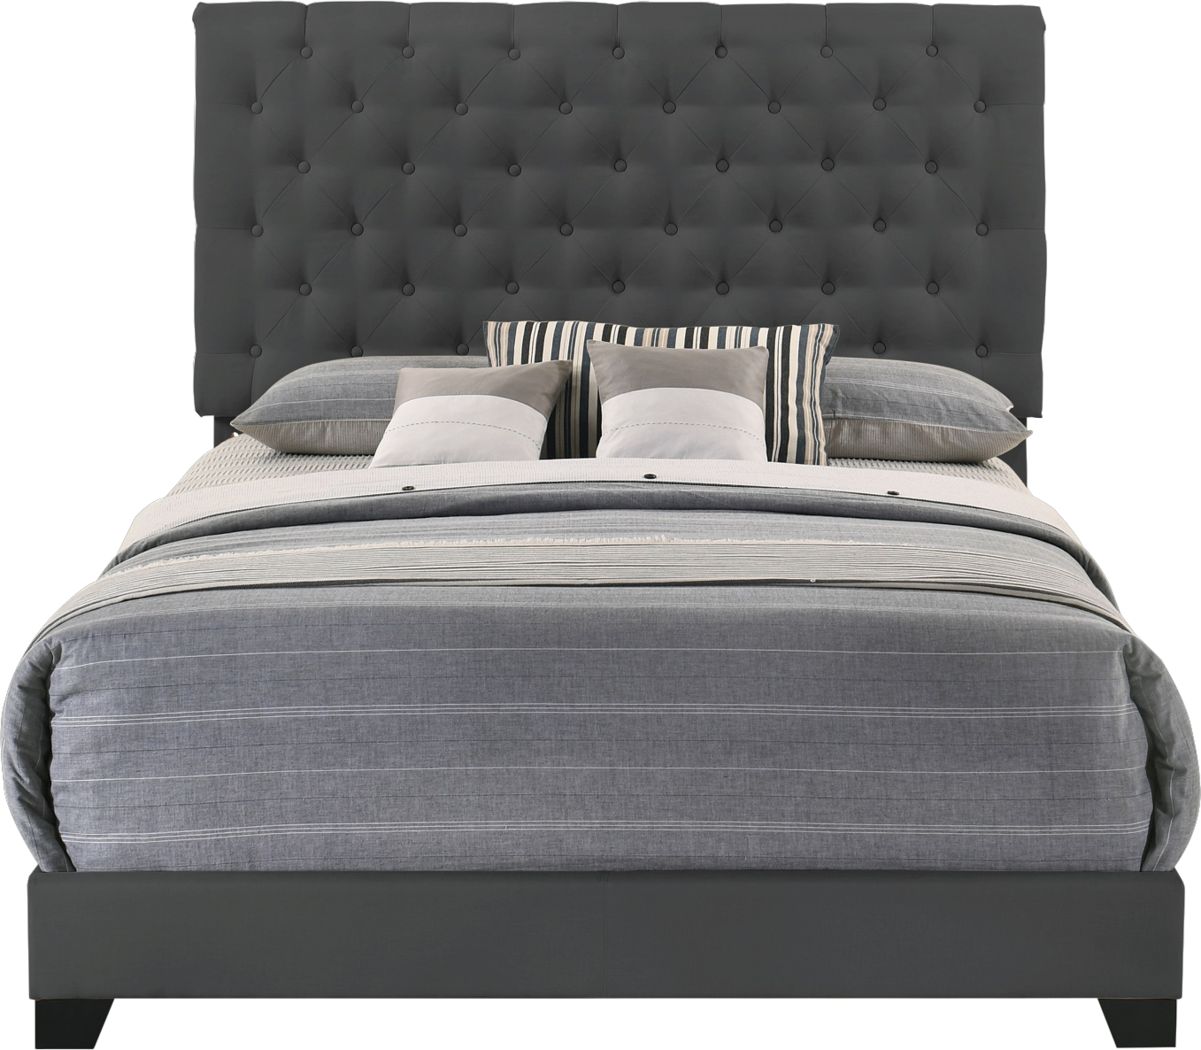 Upholstered King Size Beds Frames, Dark Grey Upholstered King Bed